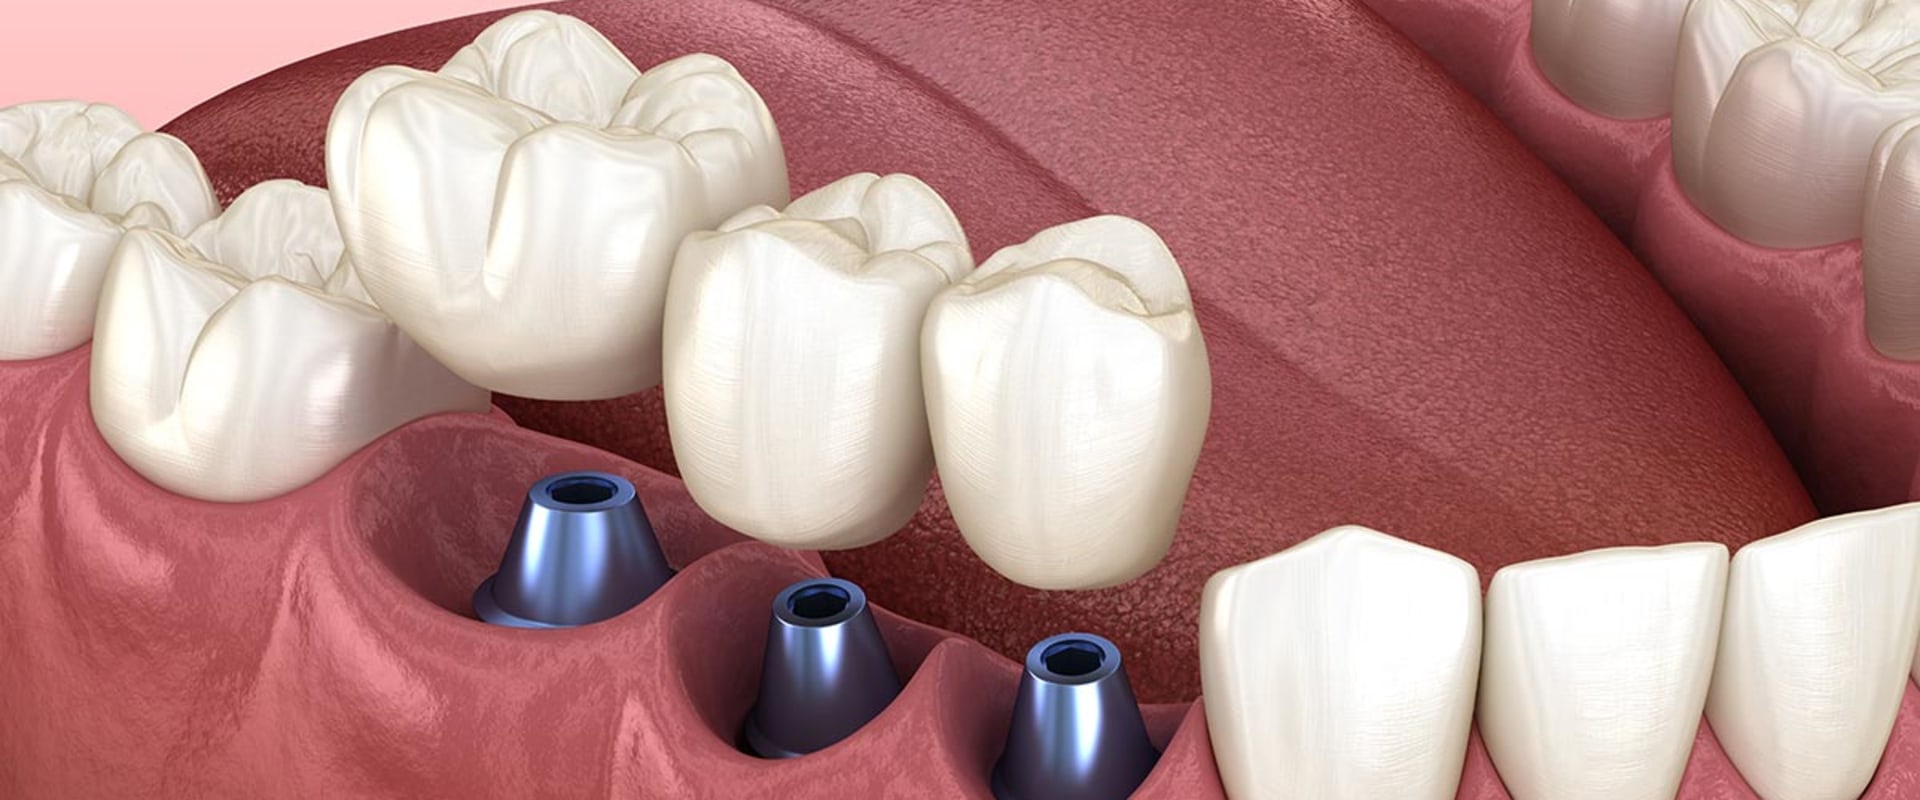 Are teeth implants worth it?